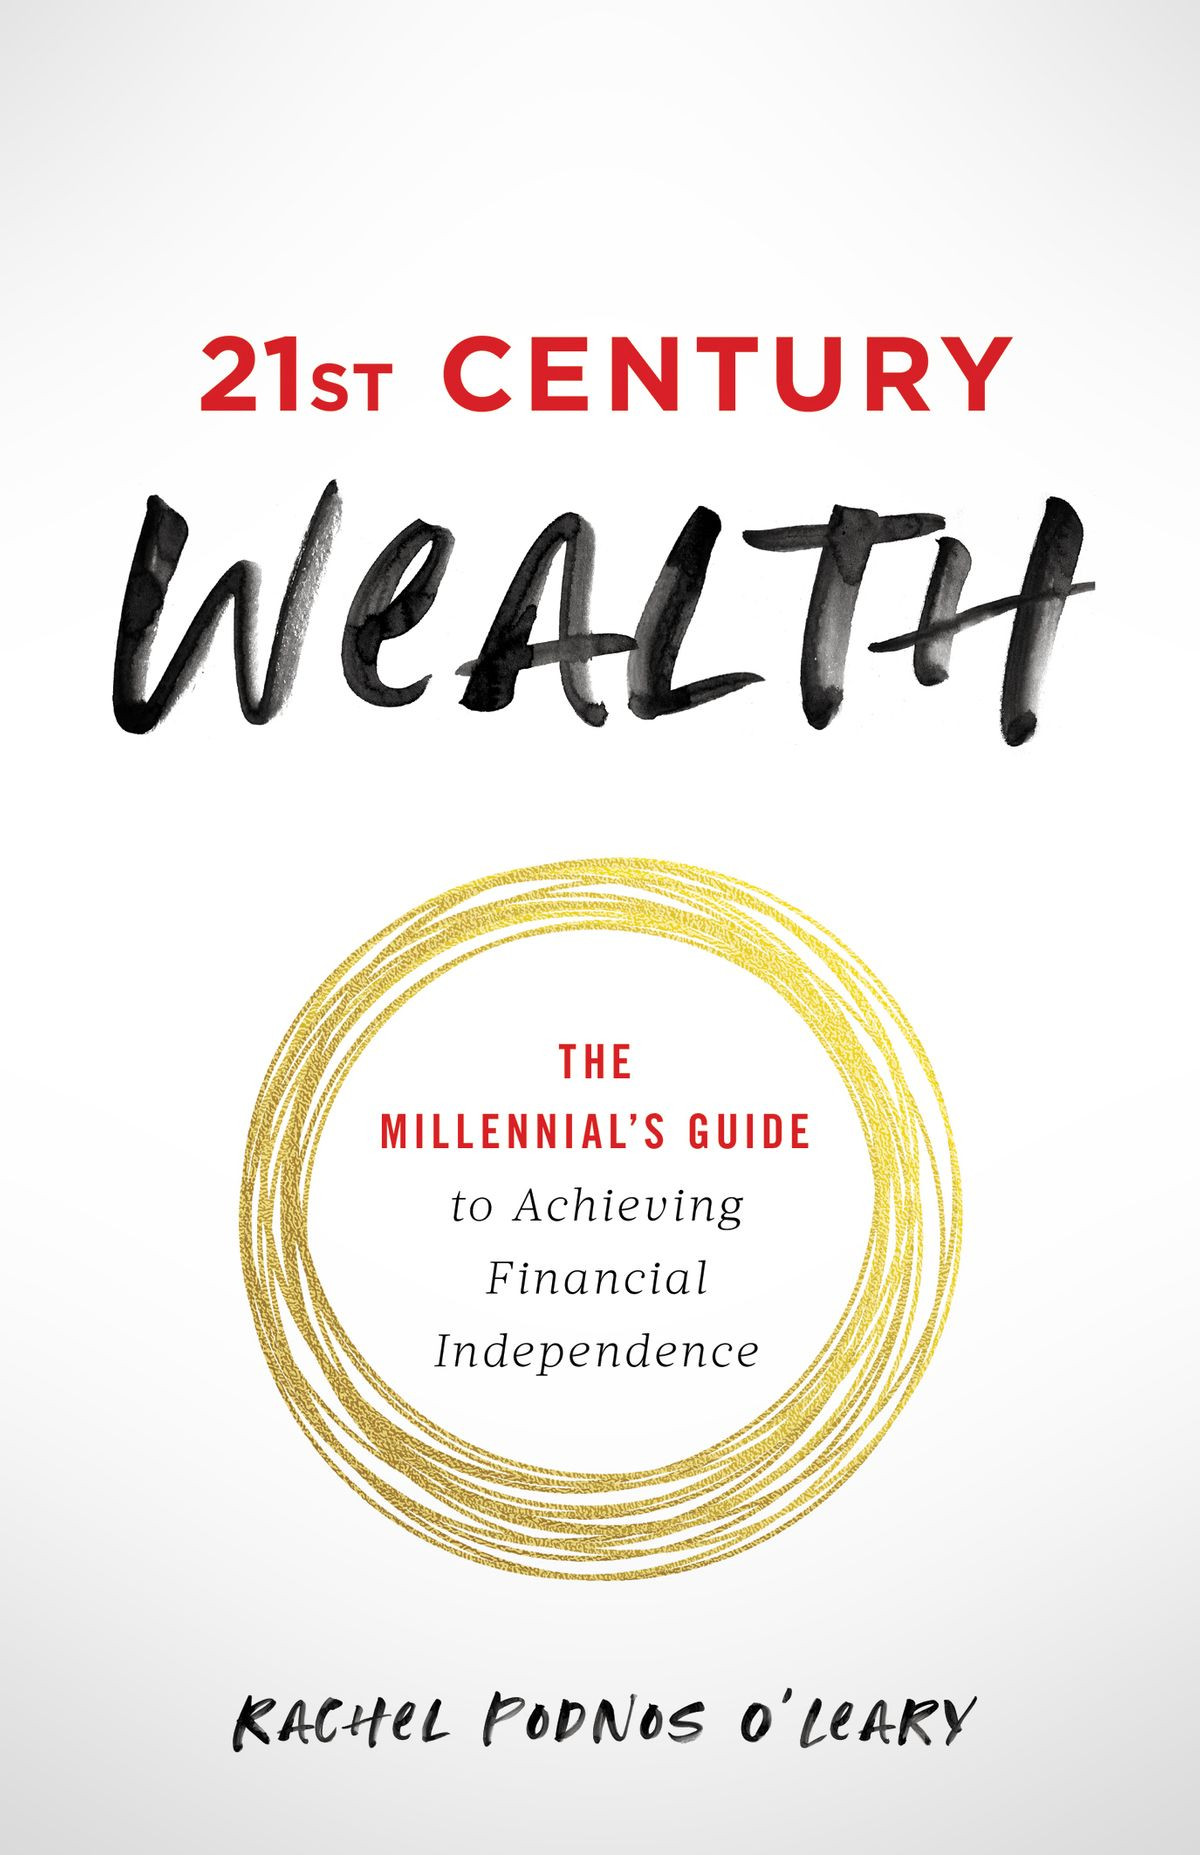 10 cuốn sách nước ngoài về tài chính có khả năng thay đổi cuộc đời bạn - Ảnh 3.